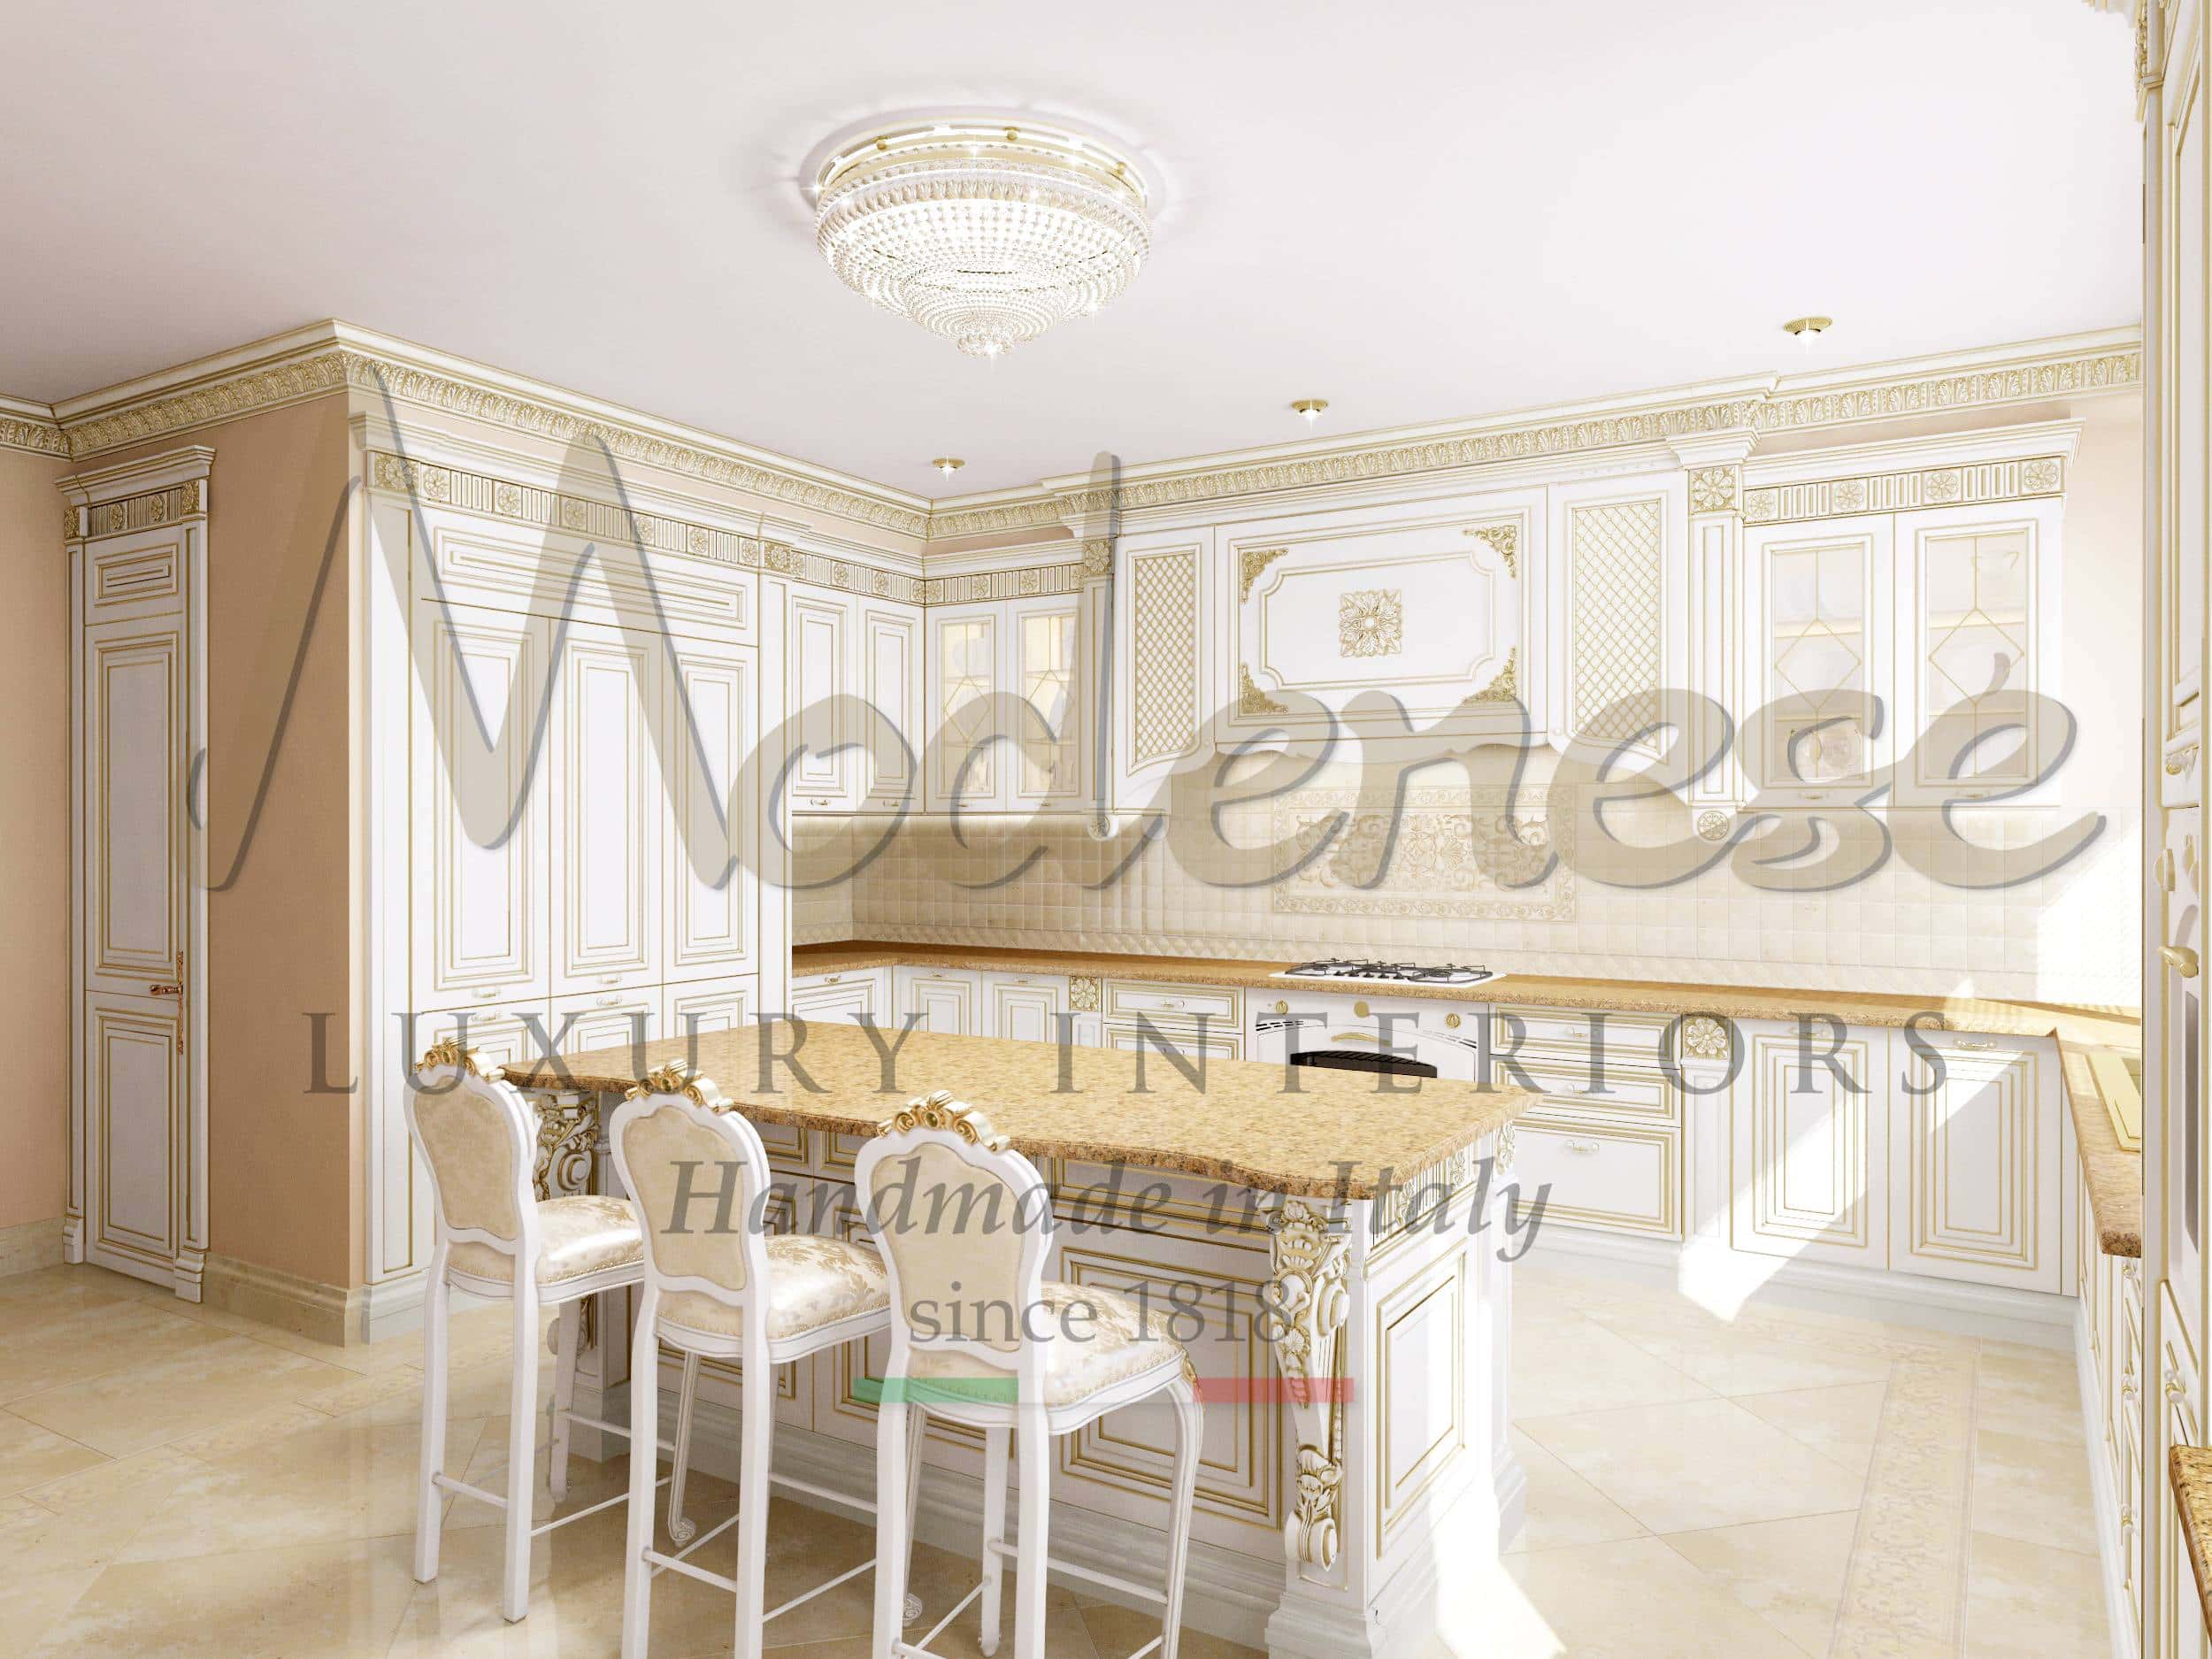 design d'intérieur cuisine sur mesure projet de décoration luxe classique baroque royal aménager fixer les meubles service consulter la décoration résidentielle